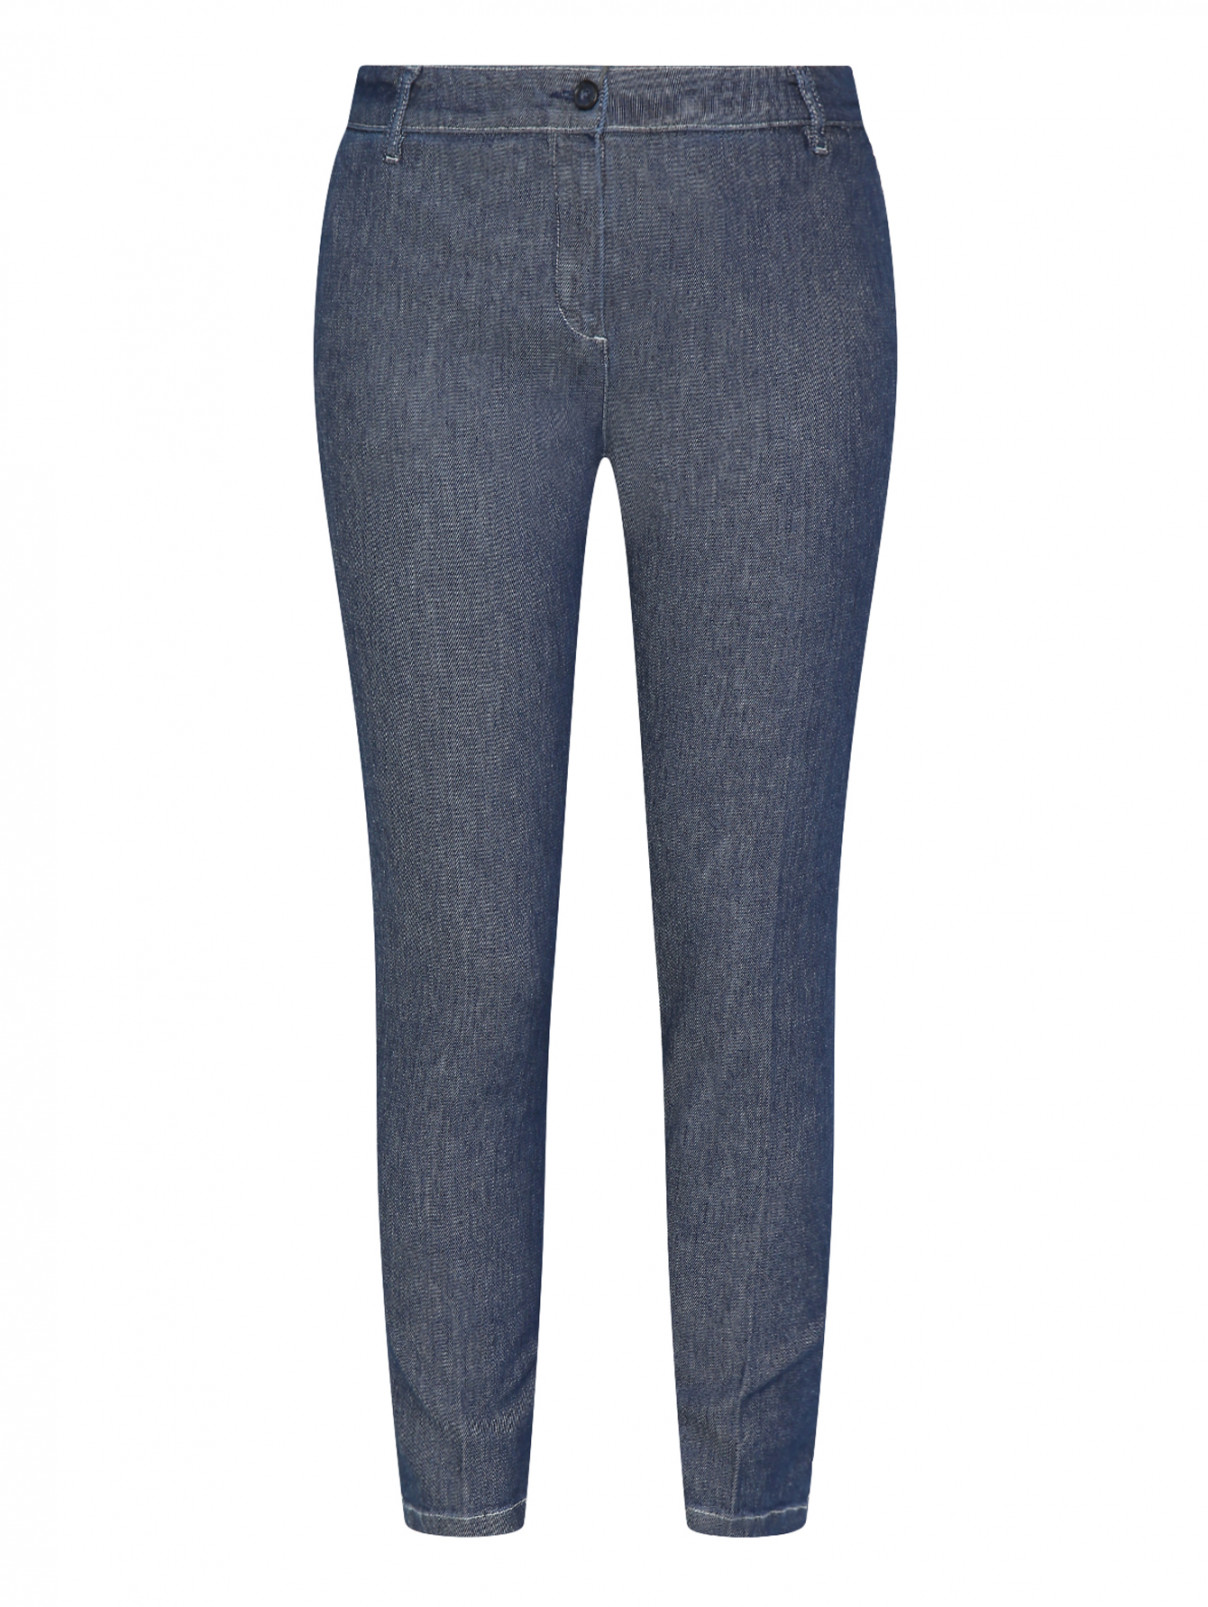 Укороченные джинсы из хлопка Persona by Marina Rinaldi  –  Общий вид  – Цвет:  Синий